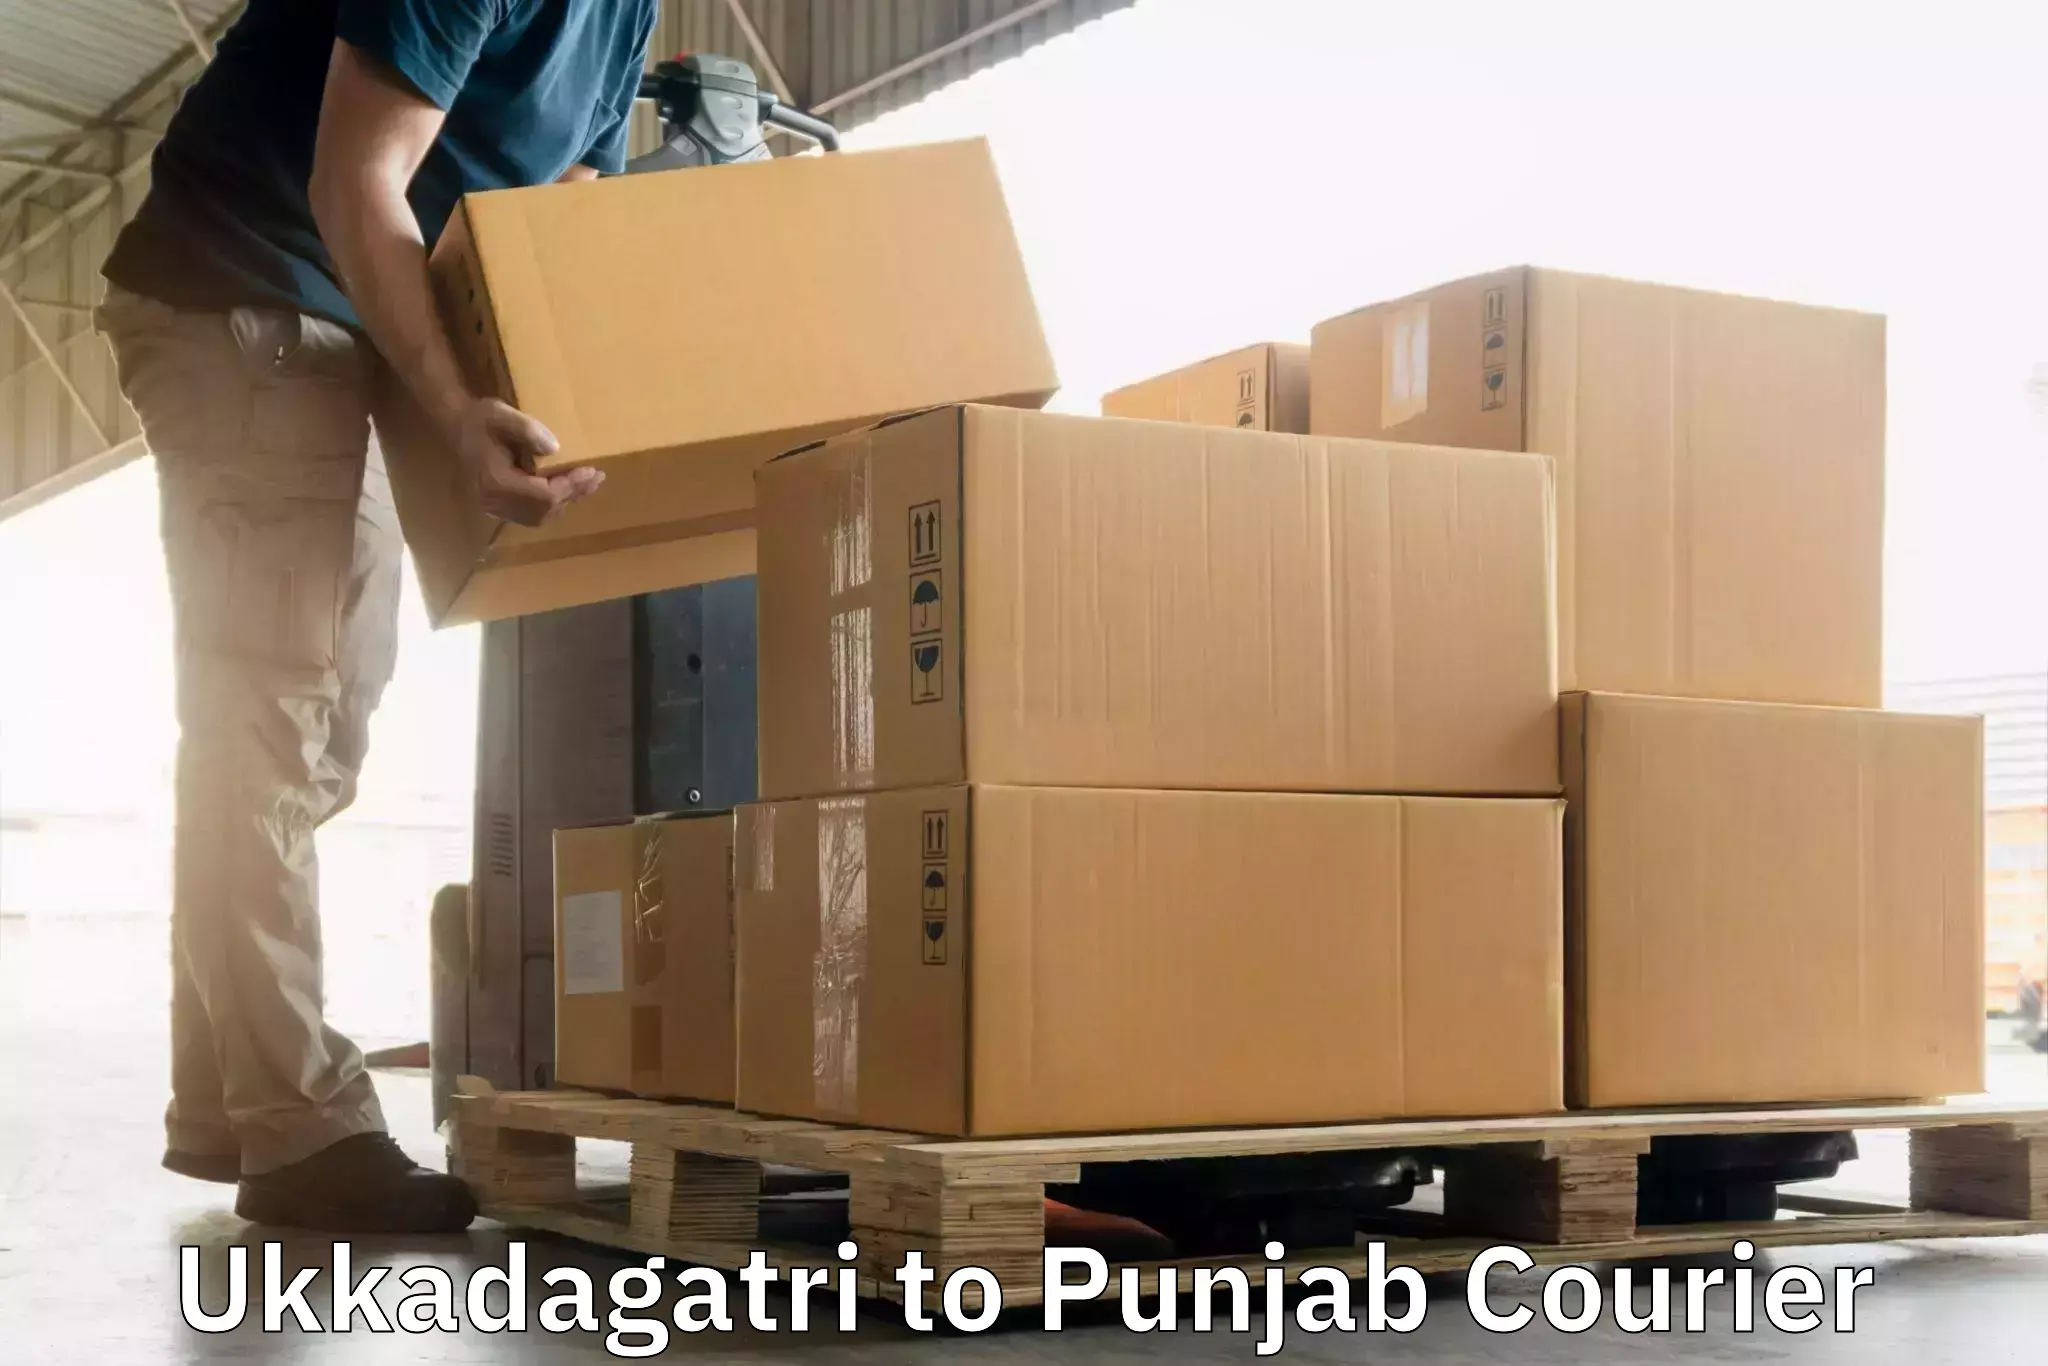 Door-to-door freight service Ukkadagatri to Goindwal Sahib